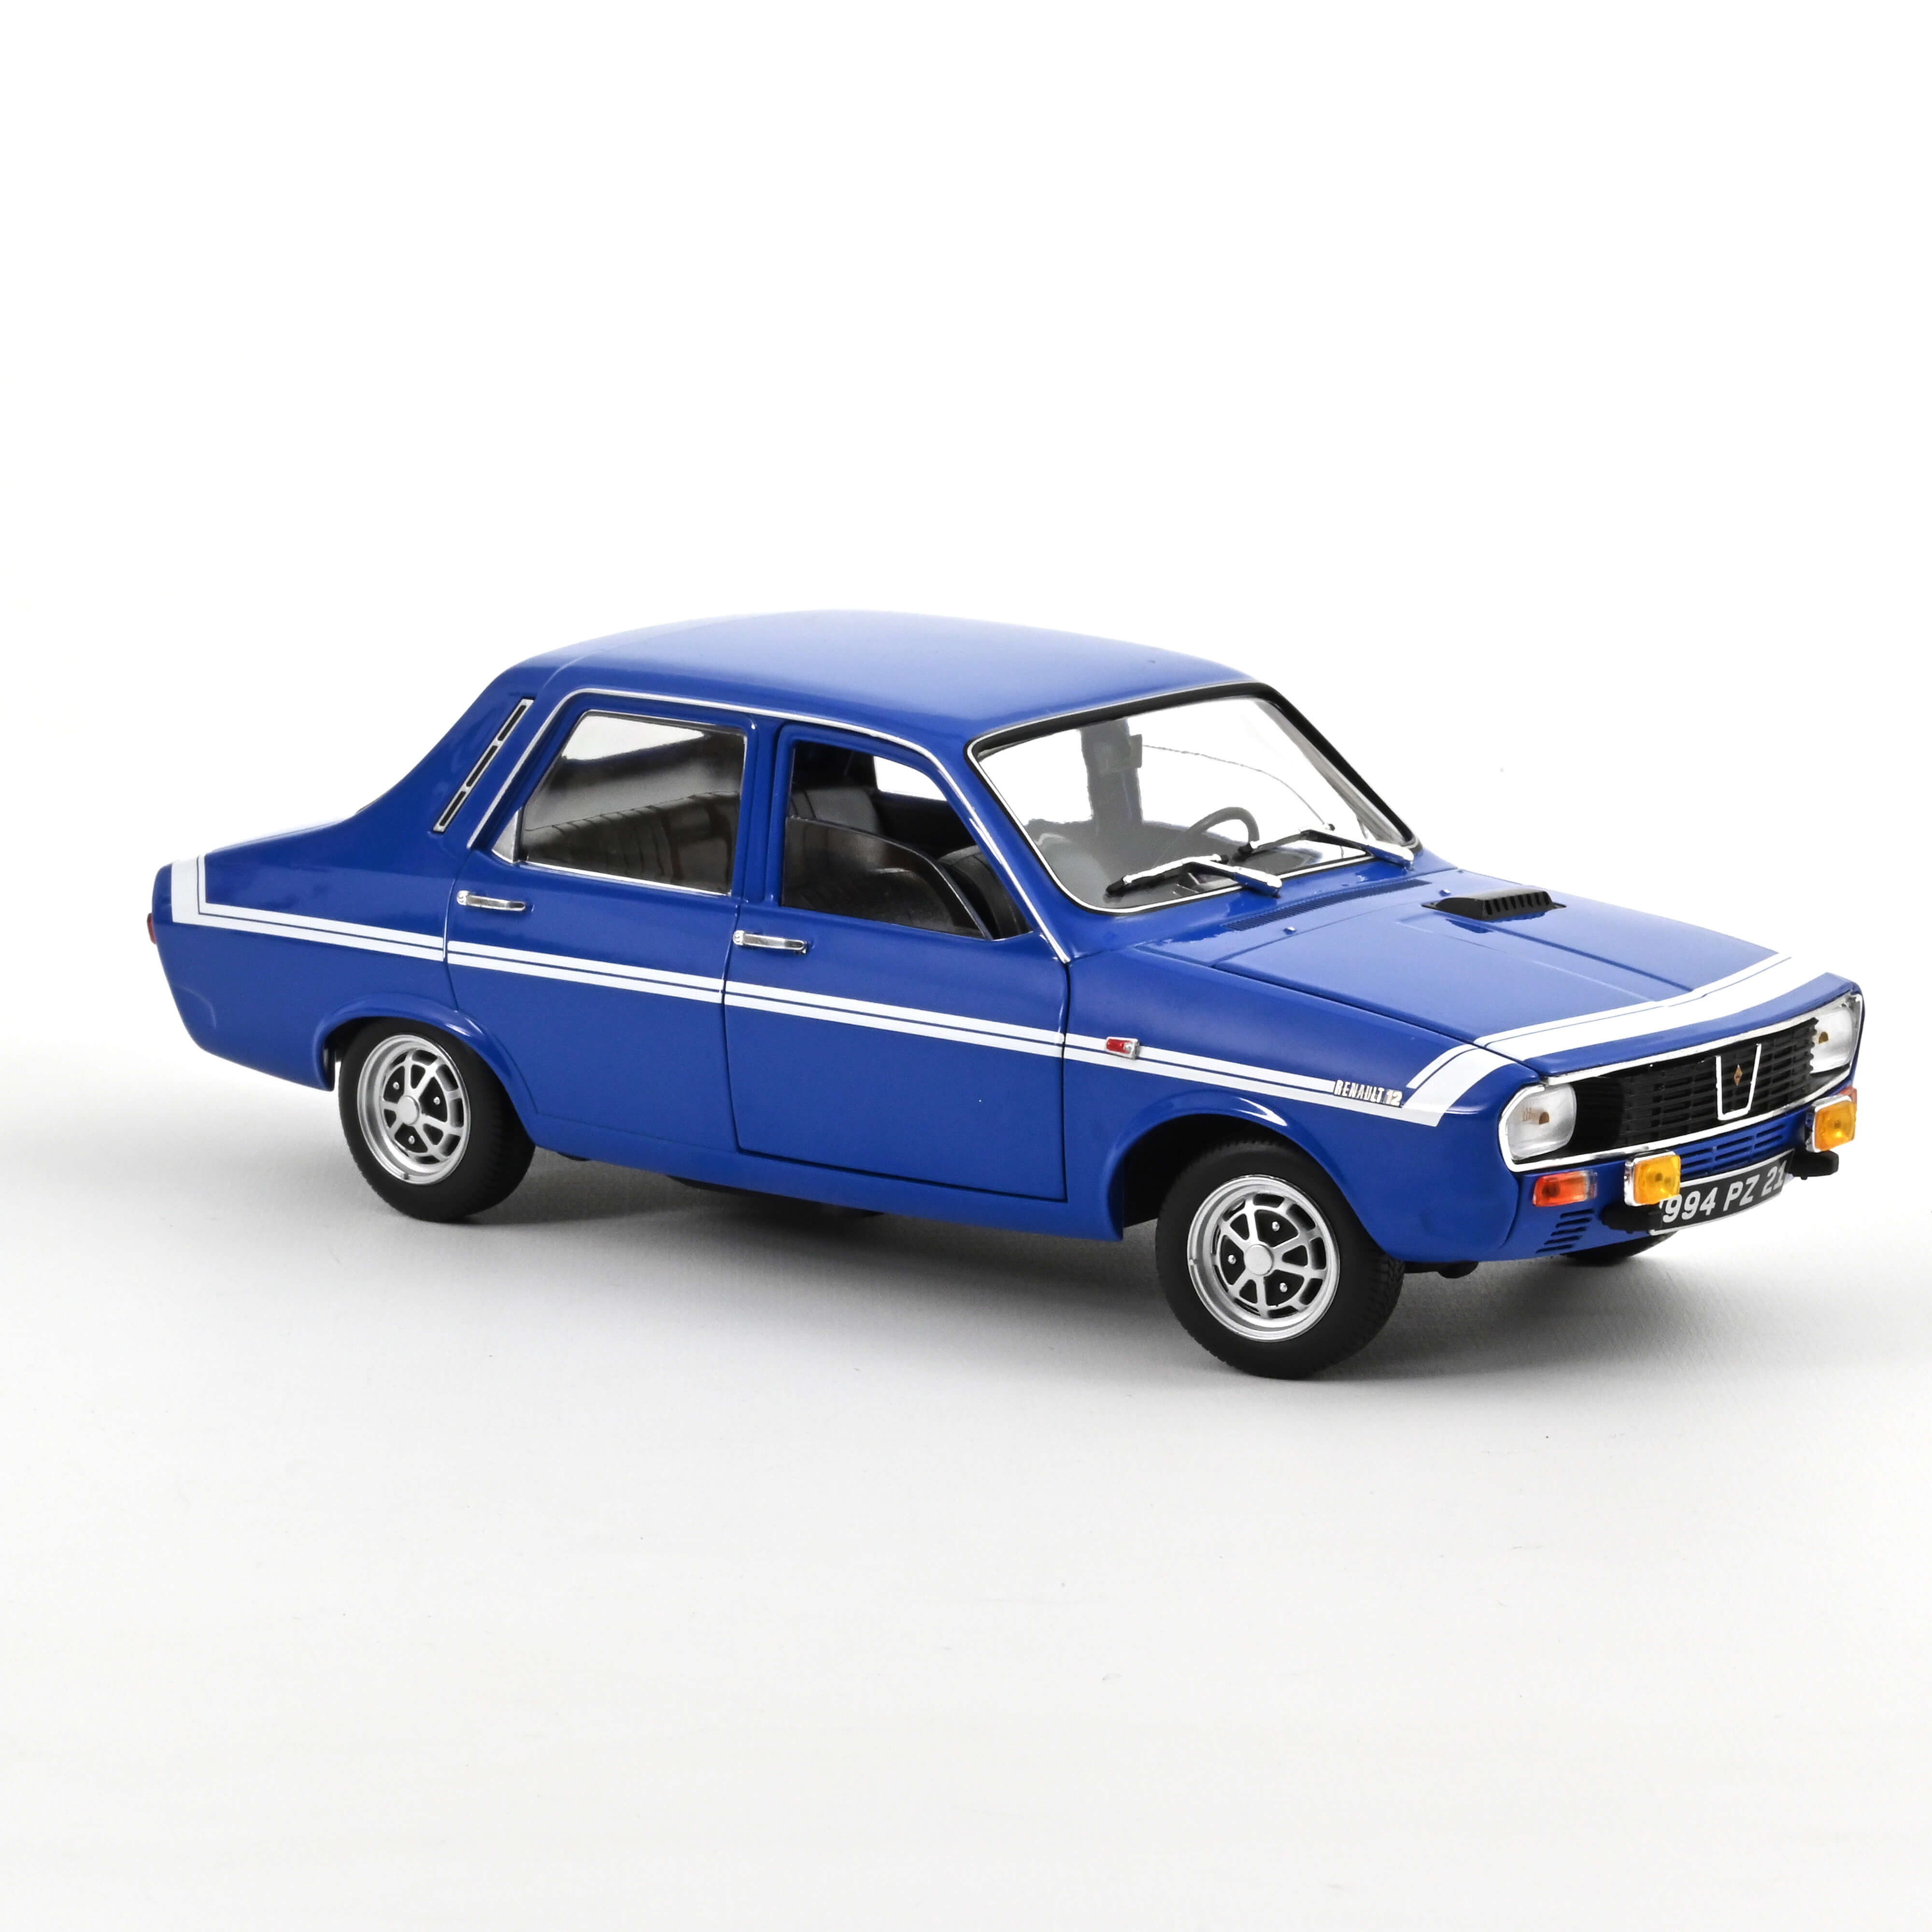 Renault 12 Gordini´71 blau without bumpers 1971 Bleu-de-France Blue